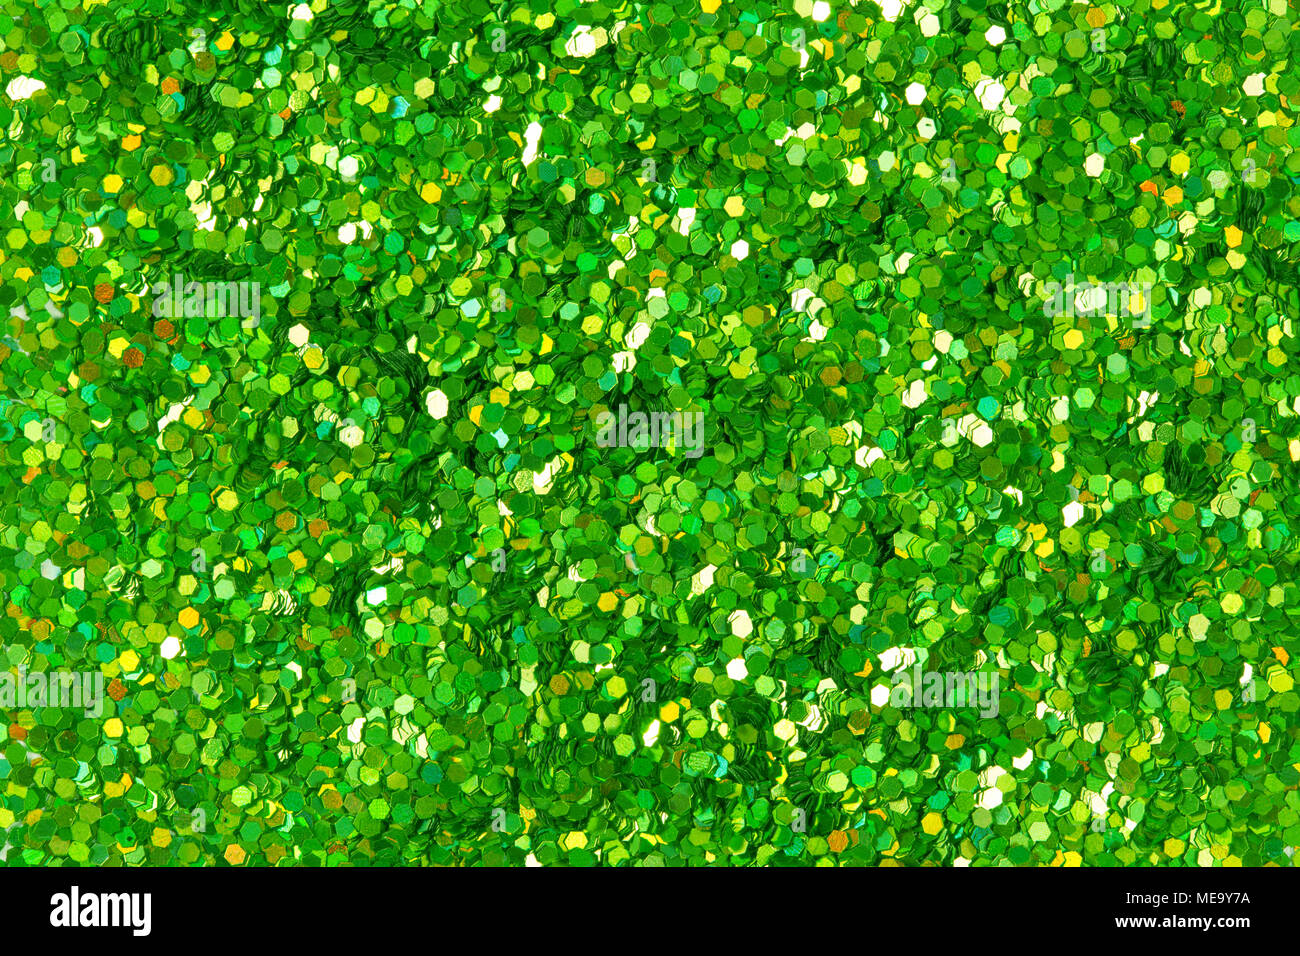 Green glitter texture. Stock Photo